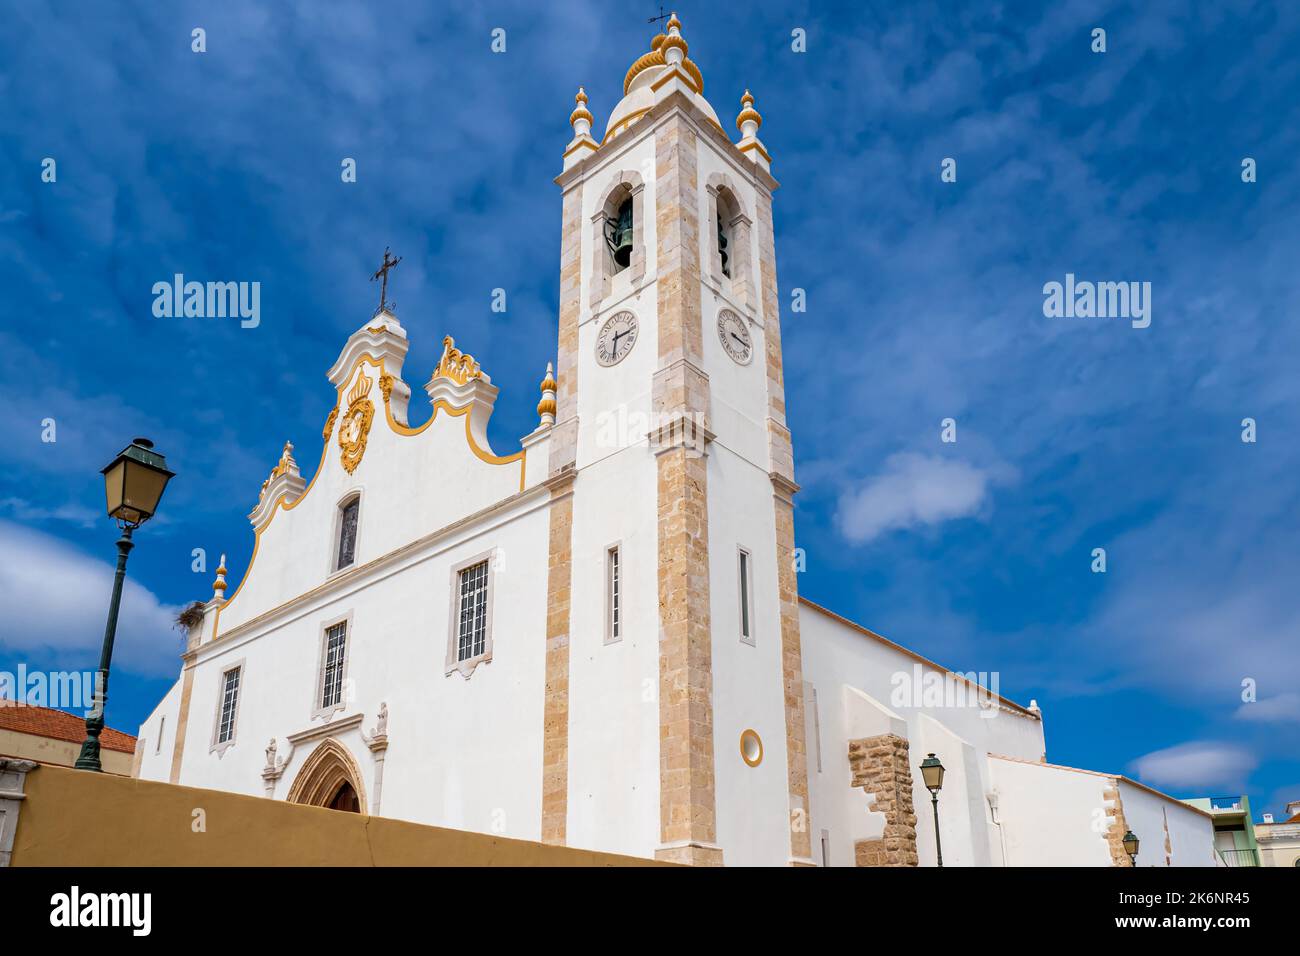 Low angle view of Baroque style white main church of the city Portimao in the Algarve area in Portugal called Igreja de nossa Senhora da Conceição . Stock Photo